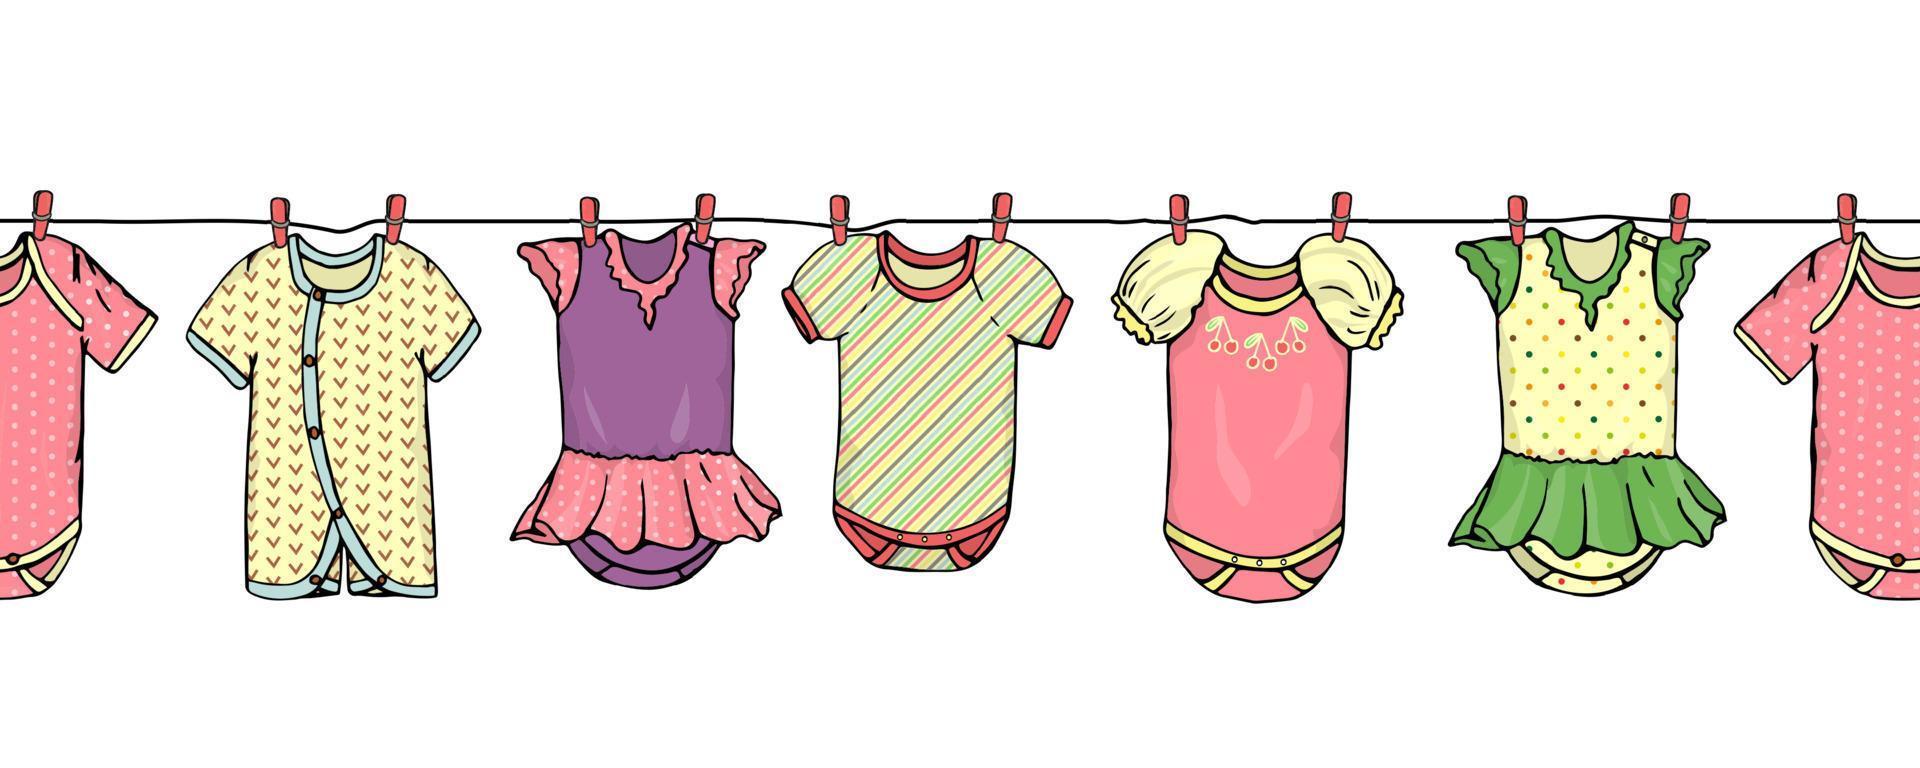 patrón de borde transparente de vector de ropa de bebé en la línea de lavado. patrón de repetición de ropa de niños brillantes. vector de fondo horizontal transparente adecuado para sitios web